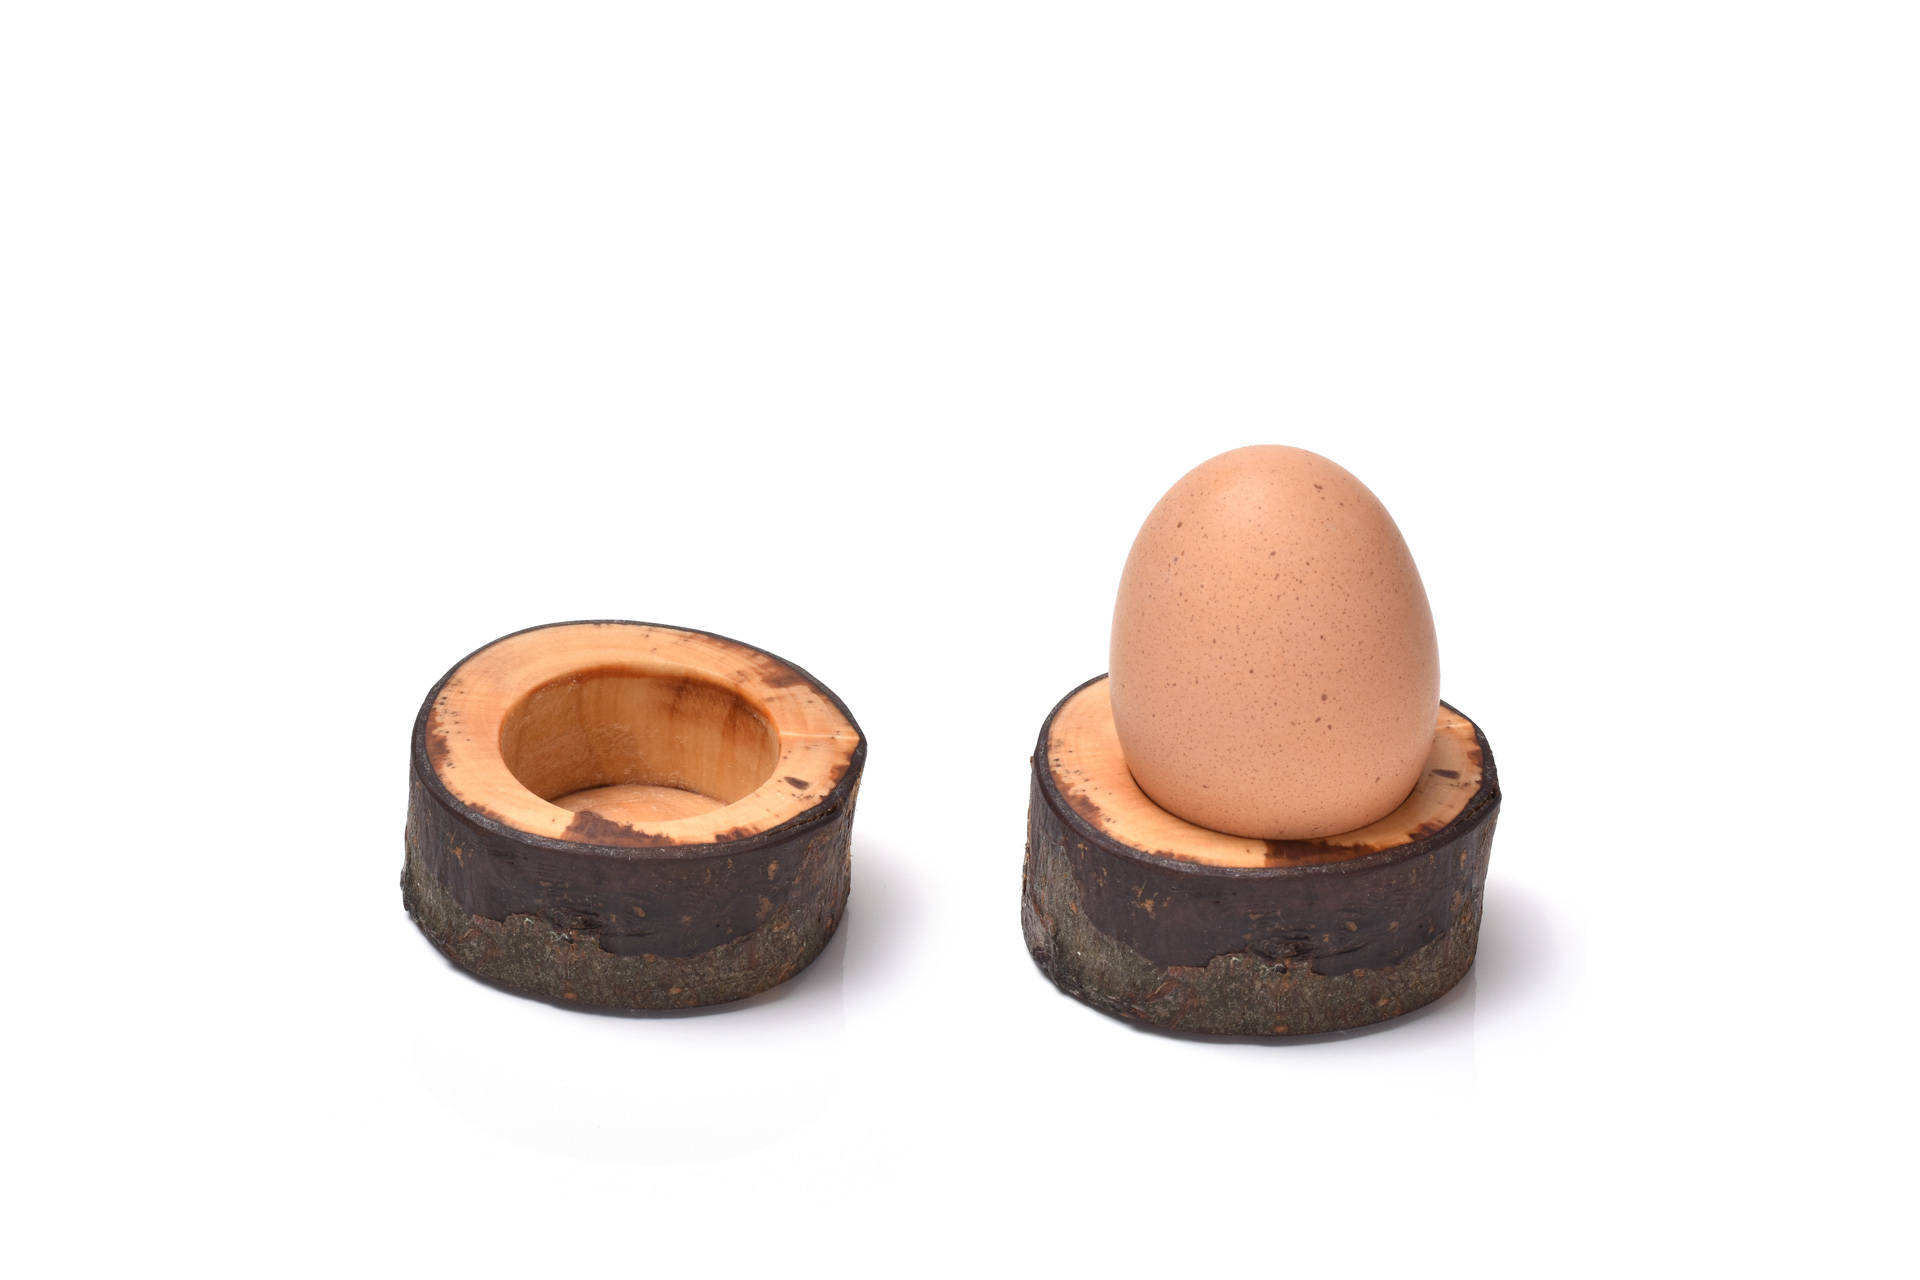 Handgefertigter Eierbecher aus Holz.